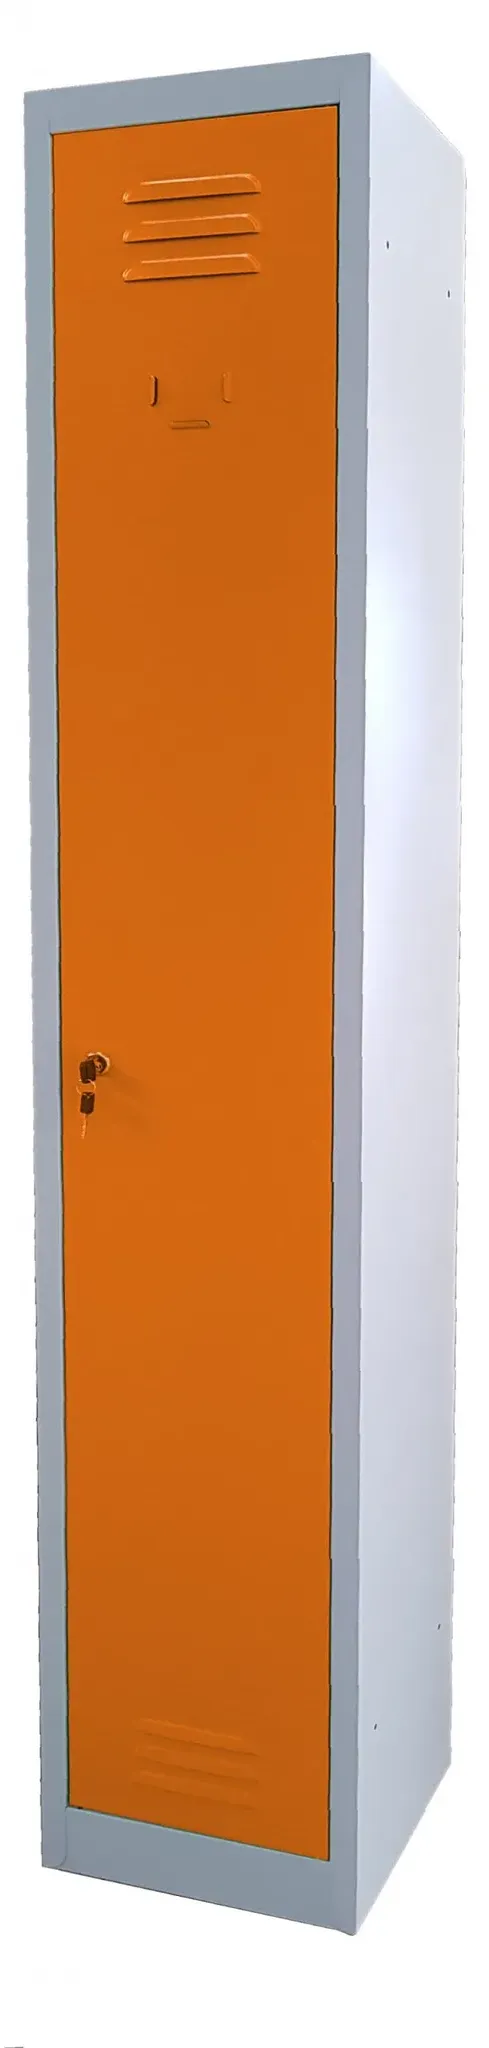 Garderobenschrank aus Metall 30x30x180h Serie Side by Side ausrichten. Farbe ORANGE